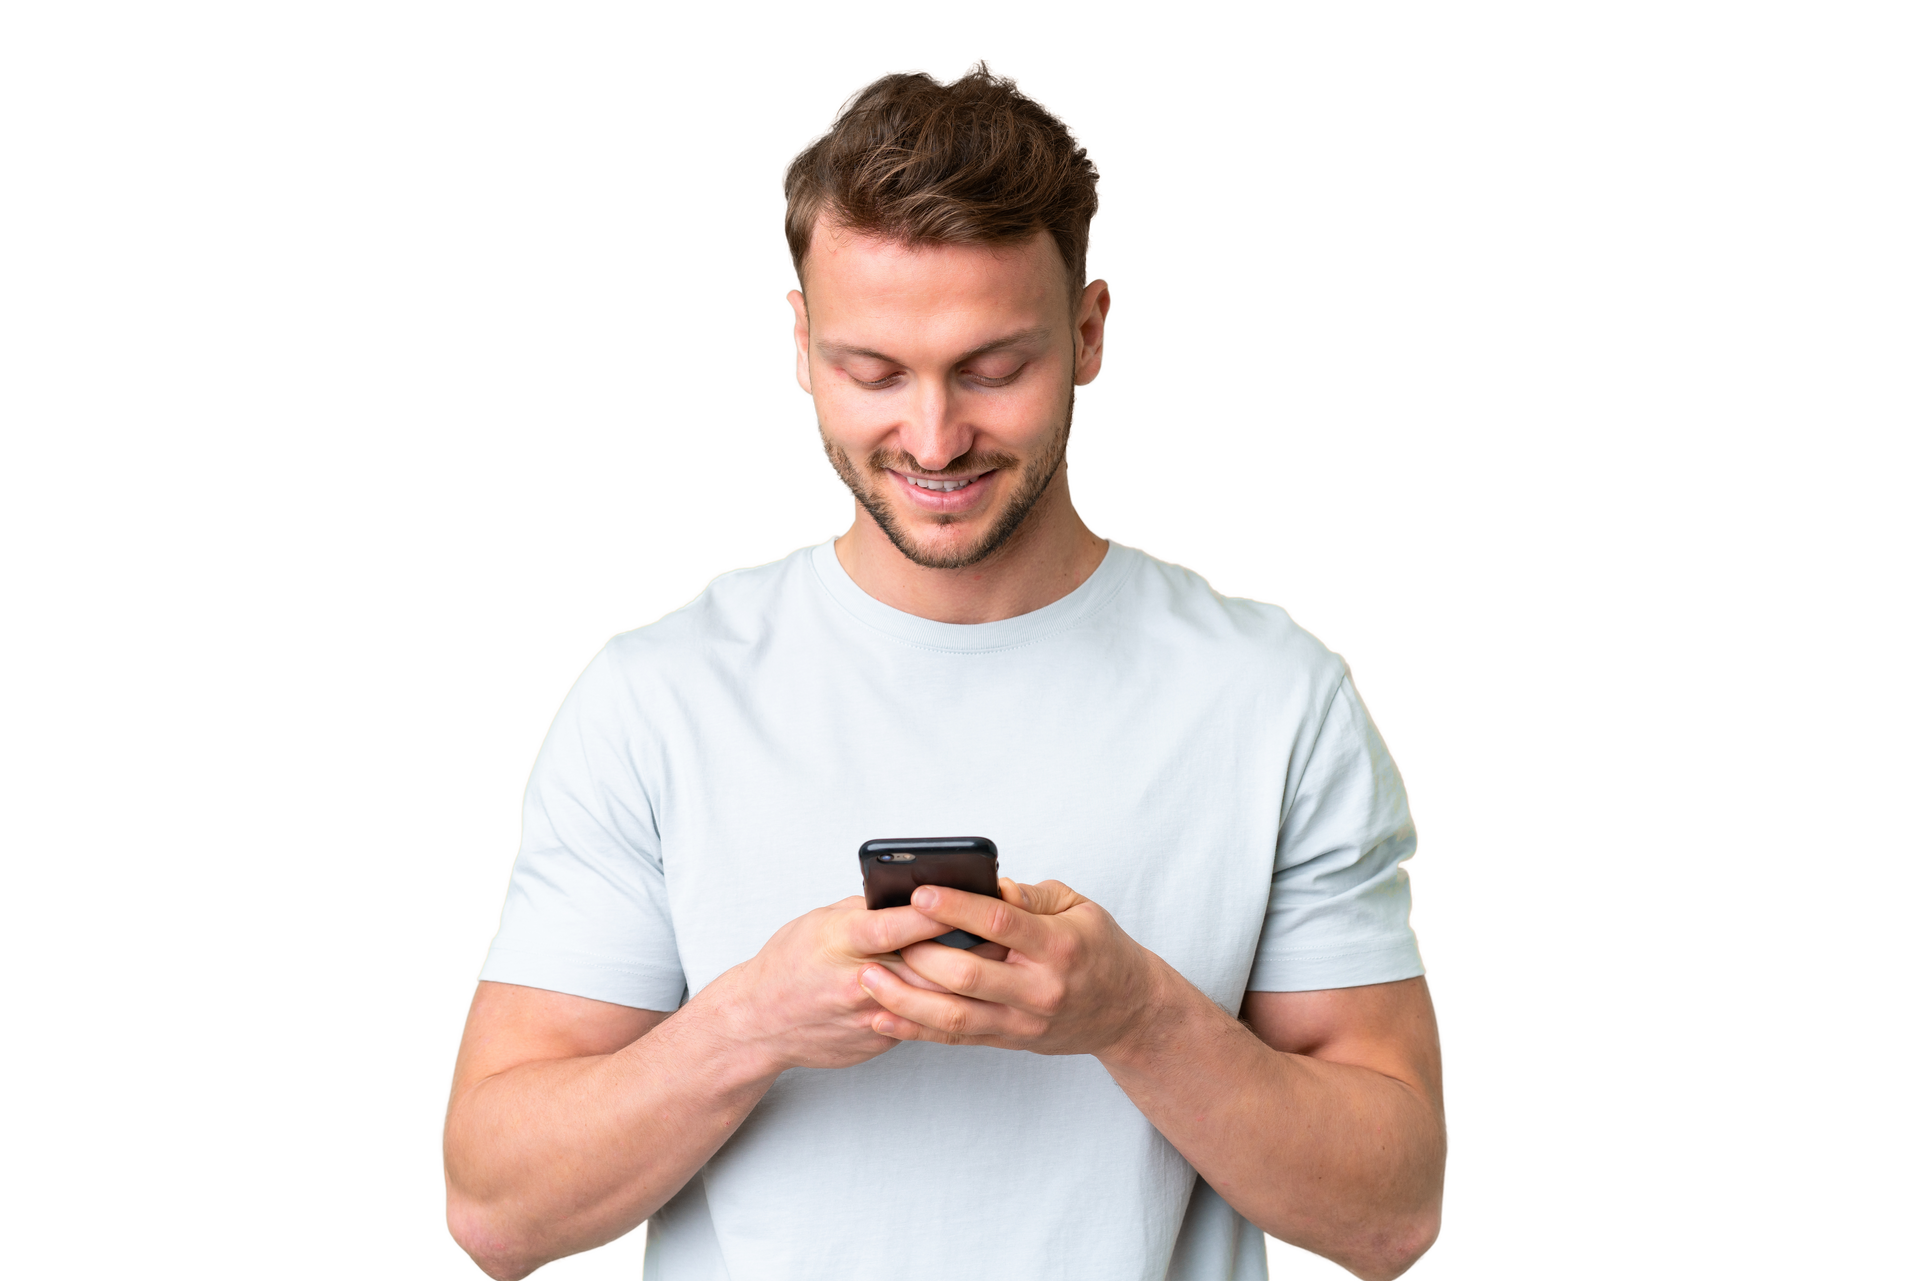 Homme en tee-shirt qui tient un téléphone